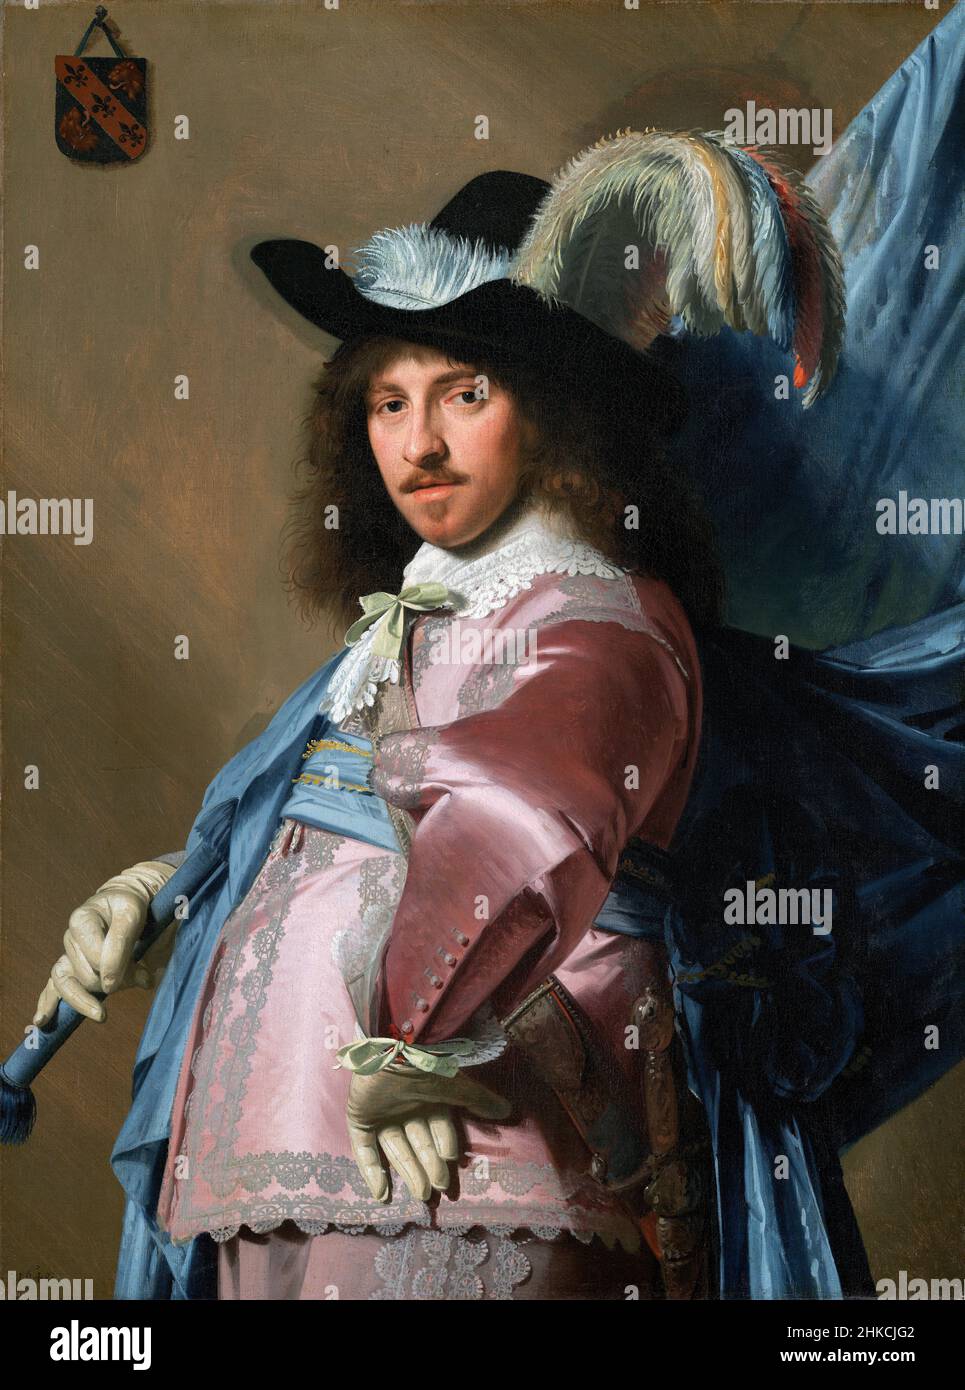 Andries Stilte als Standardträger des niederländischen Malers des Goldenen Zeitalters, Johannes Corneliszoon Verspronck (1600/1603-1662), Öl auf Leinwand, 1640 Stockfoto